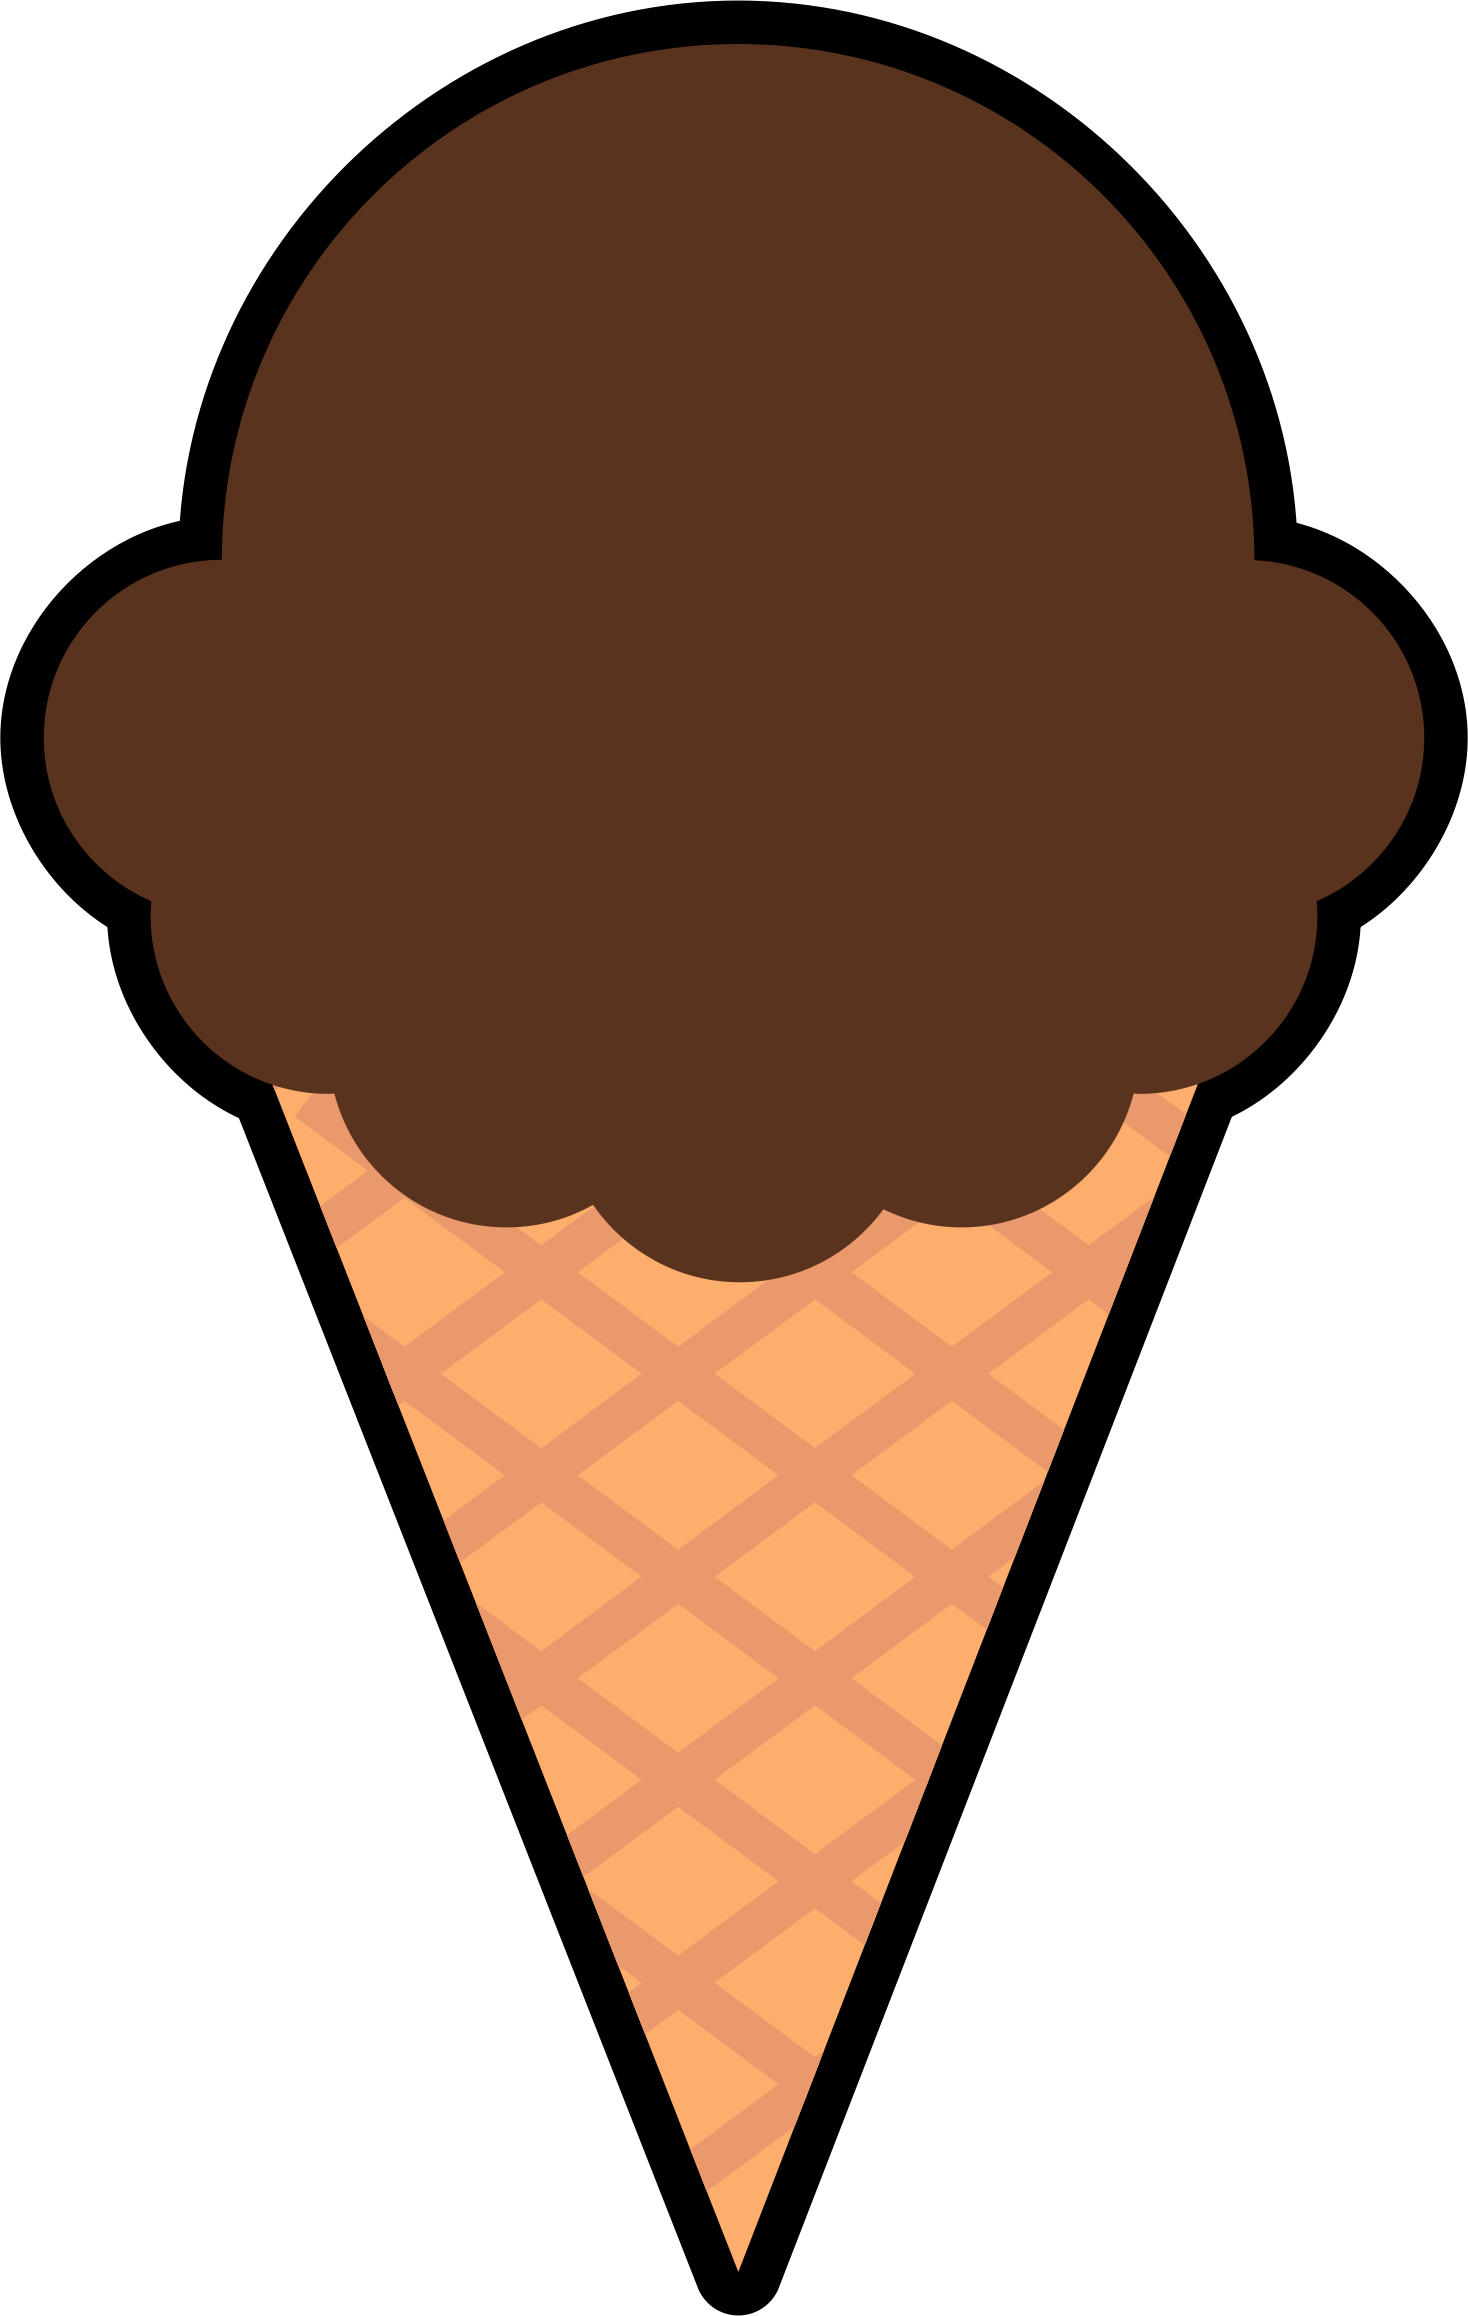 ice cream cone images clip art - photo #47